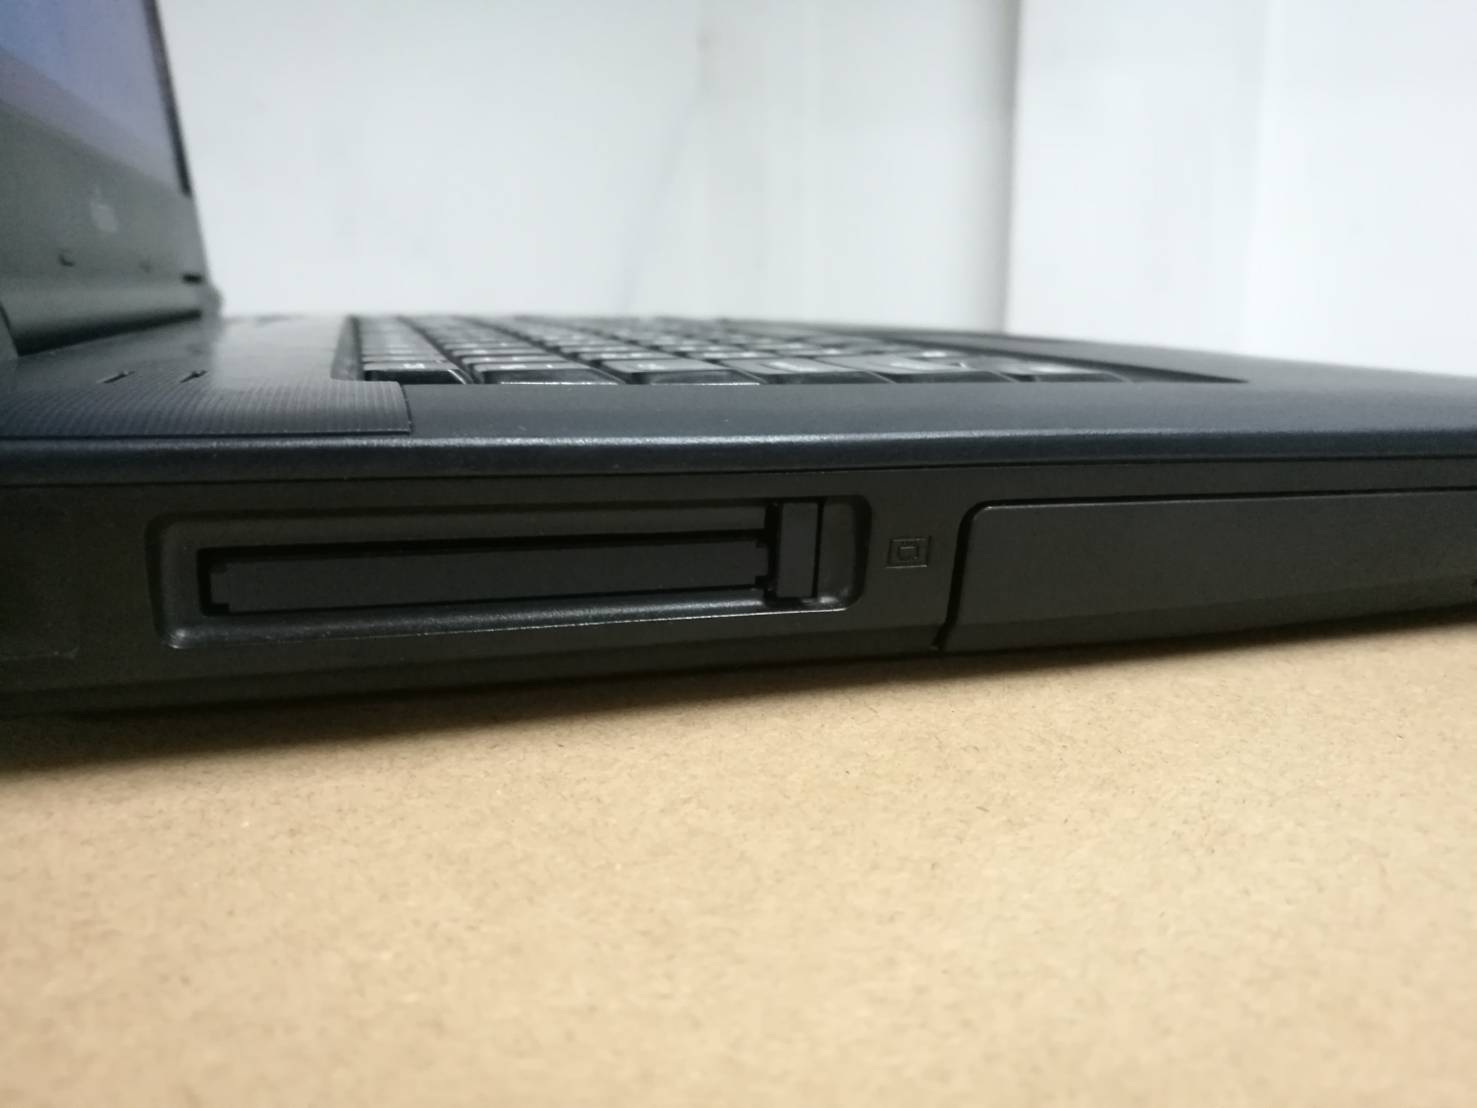 ข้อมูลประกอบของ โน๊ตบุ๊ค Notebook Fu A550 Core i3 M350 RAM 4GB/HDD:320GB ขนาด15.6 นิ้ว